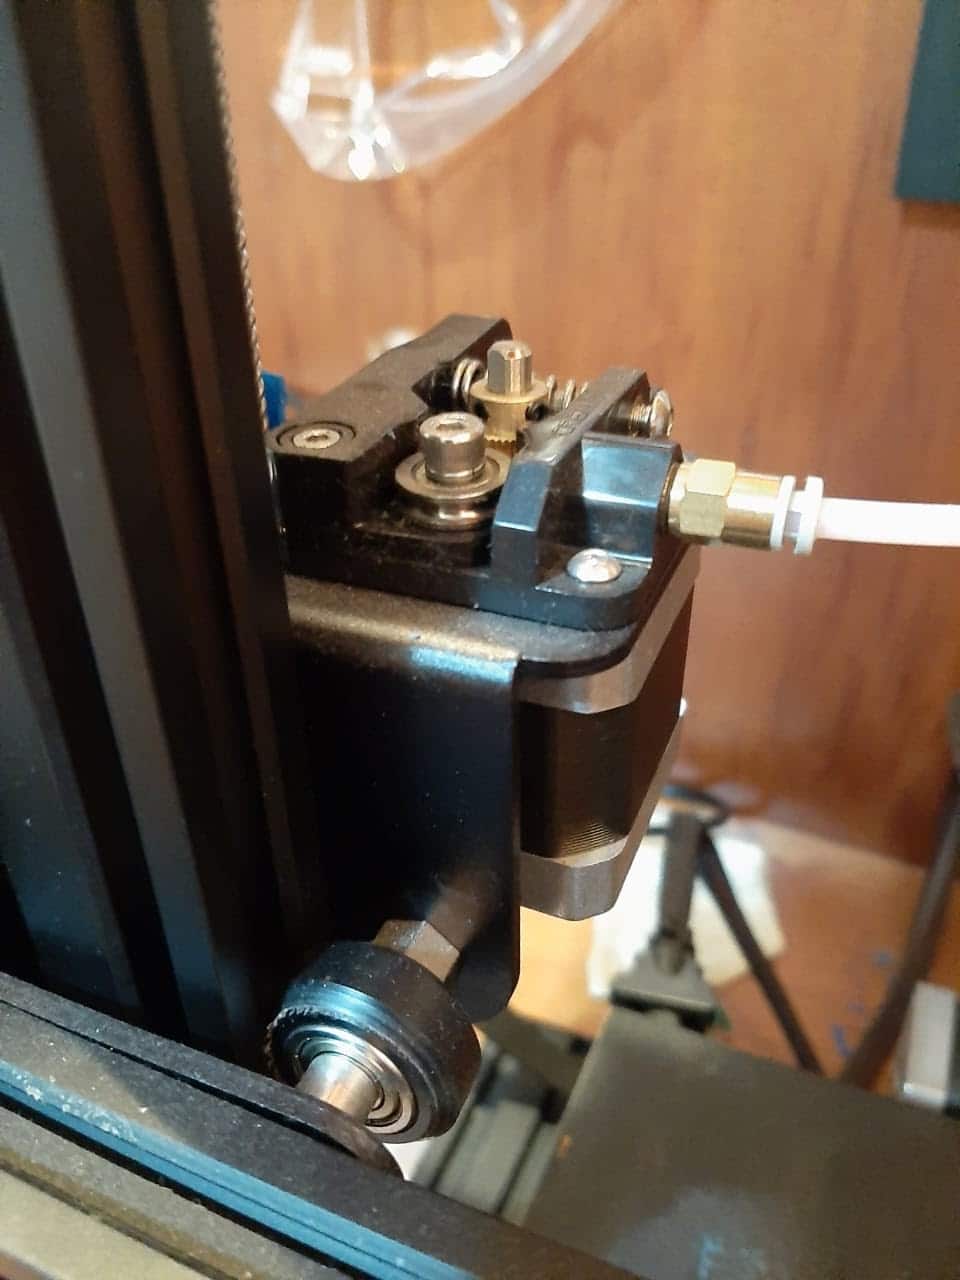 Desconecte qualquer cabo USB ou dispositivo USB conectado à impressora Ender 3.
Pare a impressão atual, se estiver em andamento, pressionando o botão Parar no painel de controle da impressora.